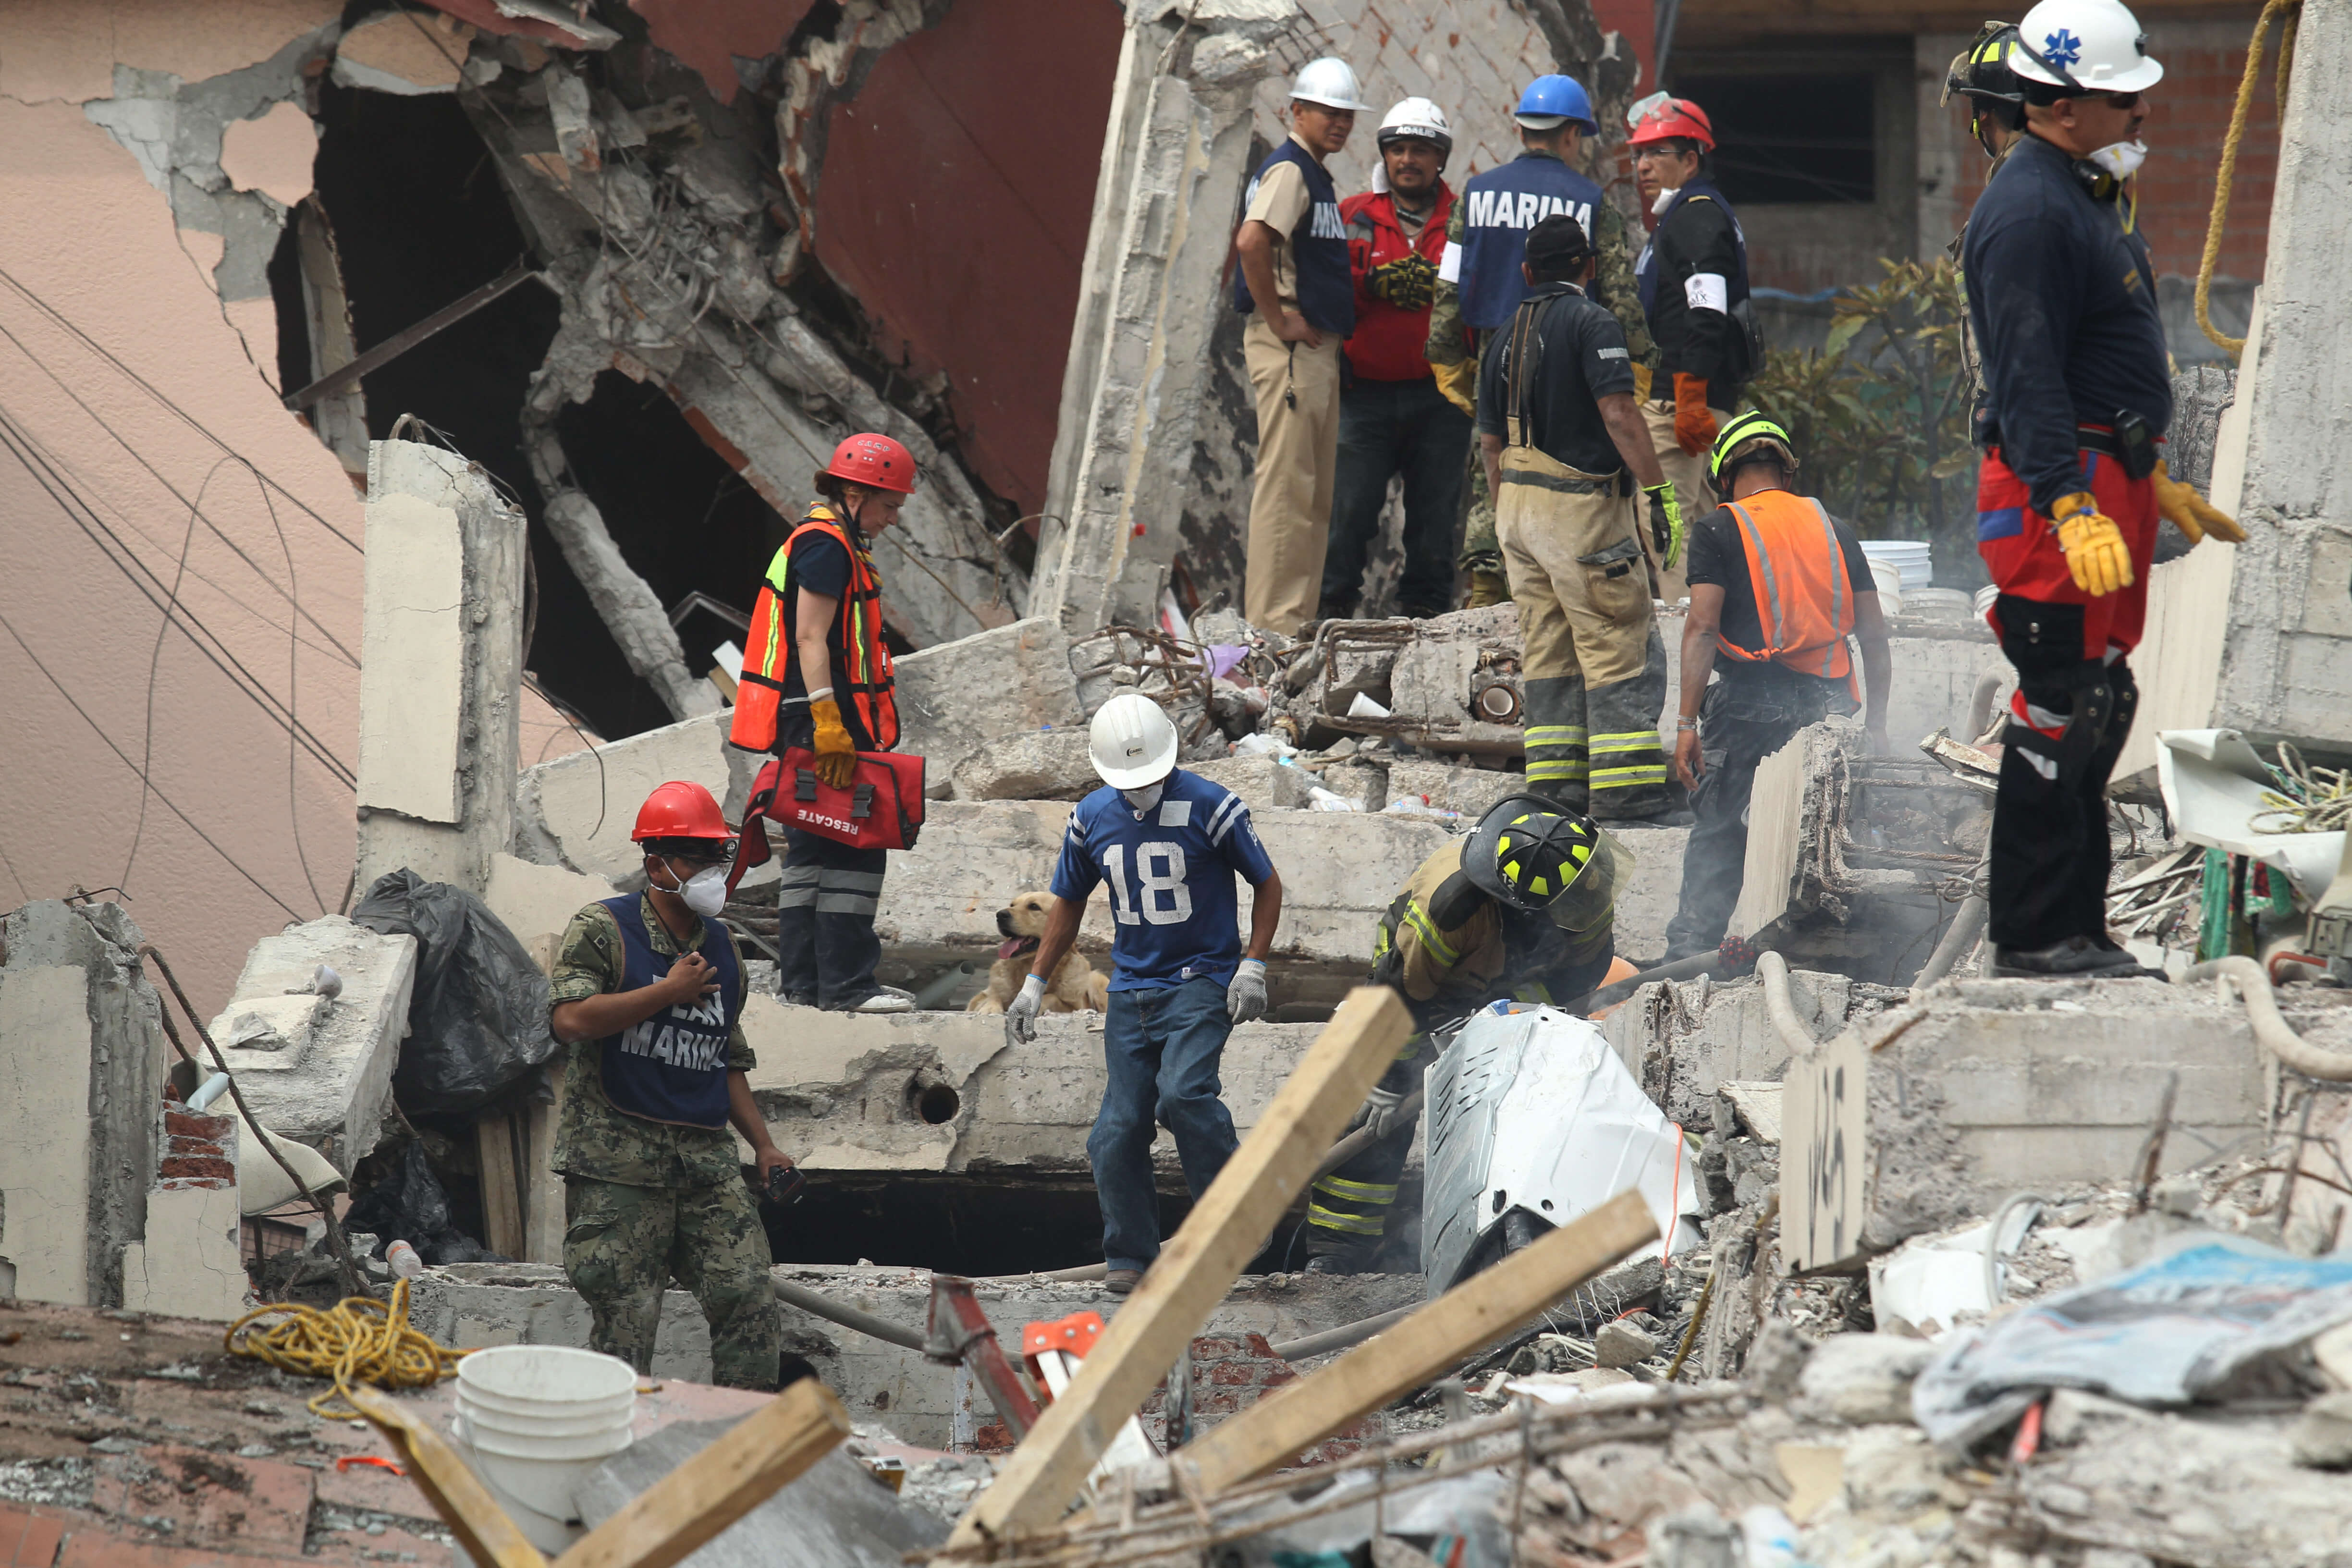 Muertos sismo terremoto 19 septiembre mexico